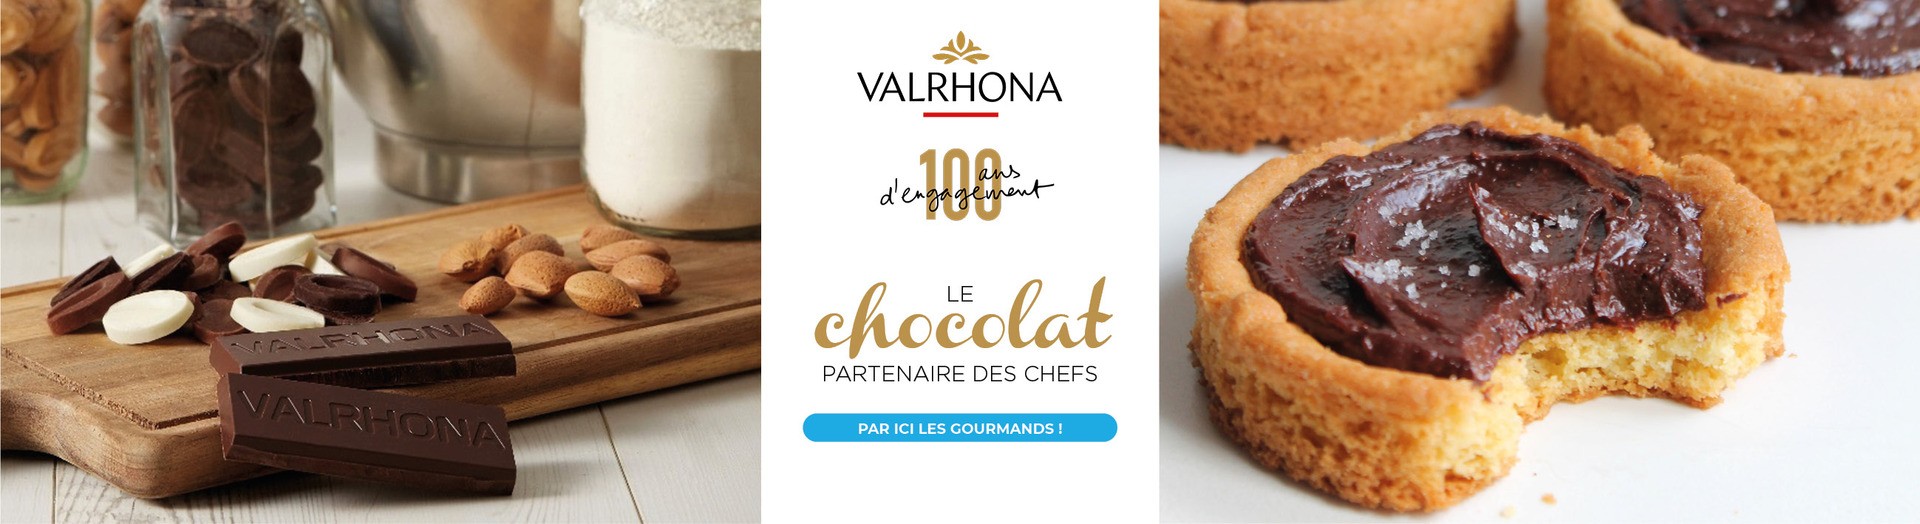 Valrhona : Le chocolat partenaire des chefs, fête ses 100 ans